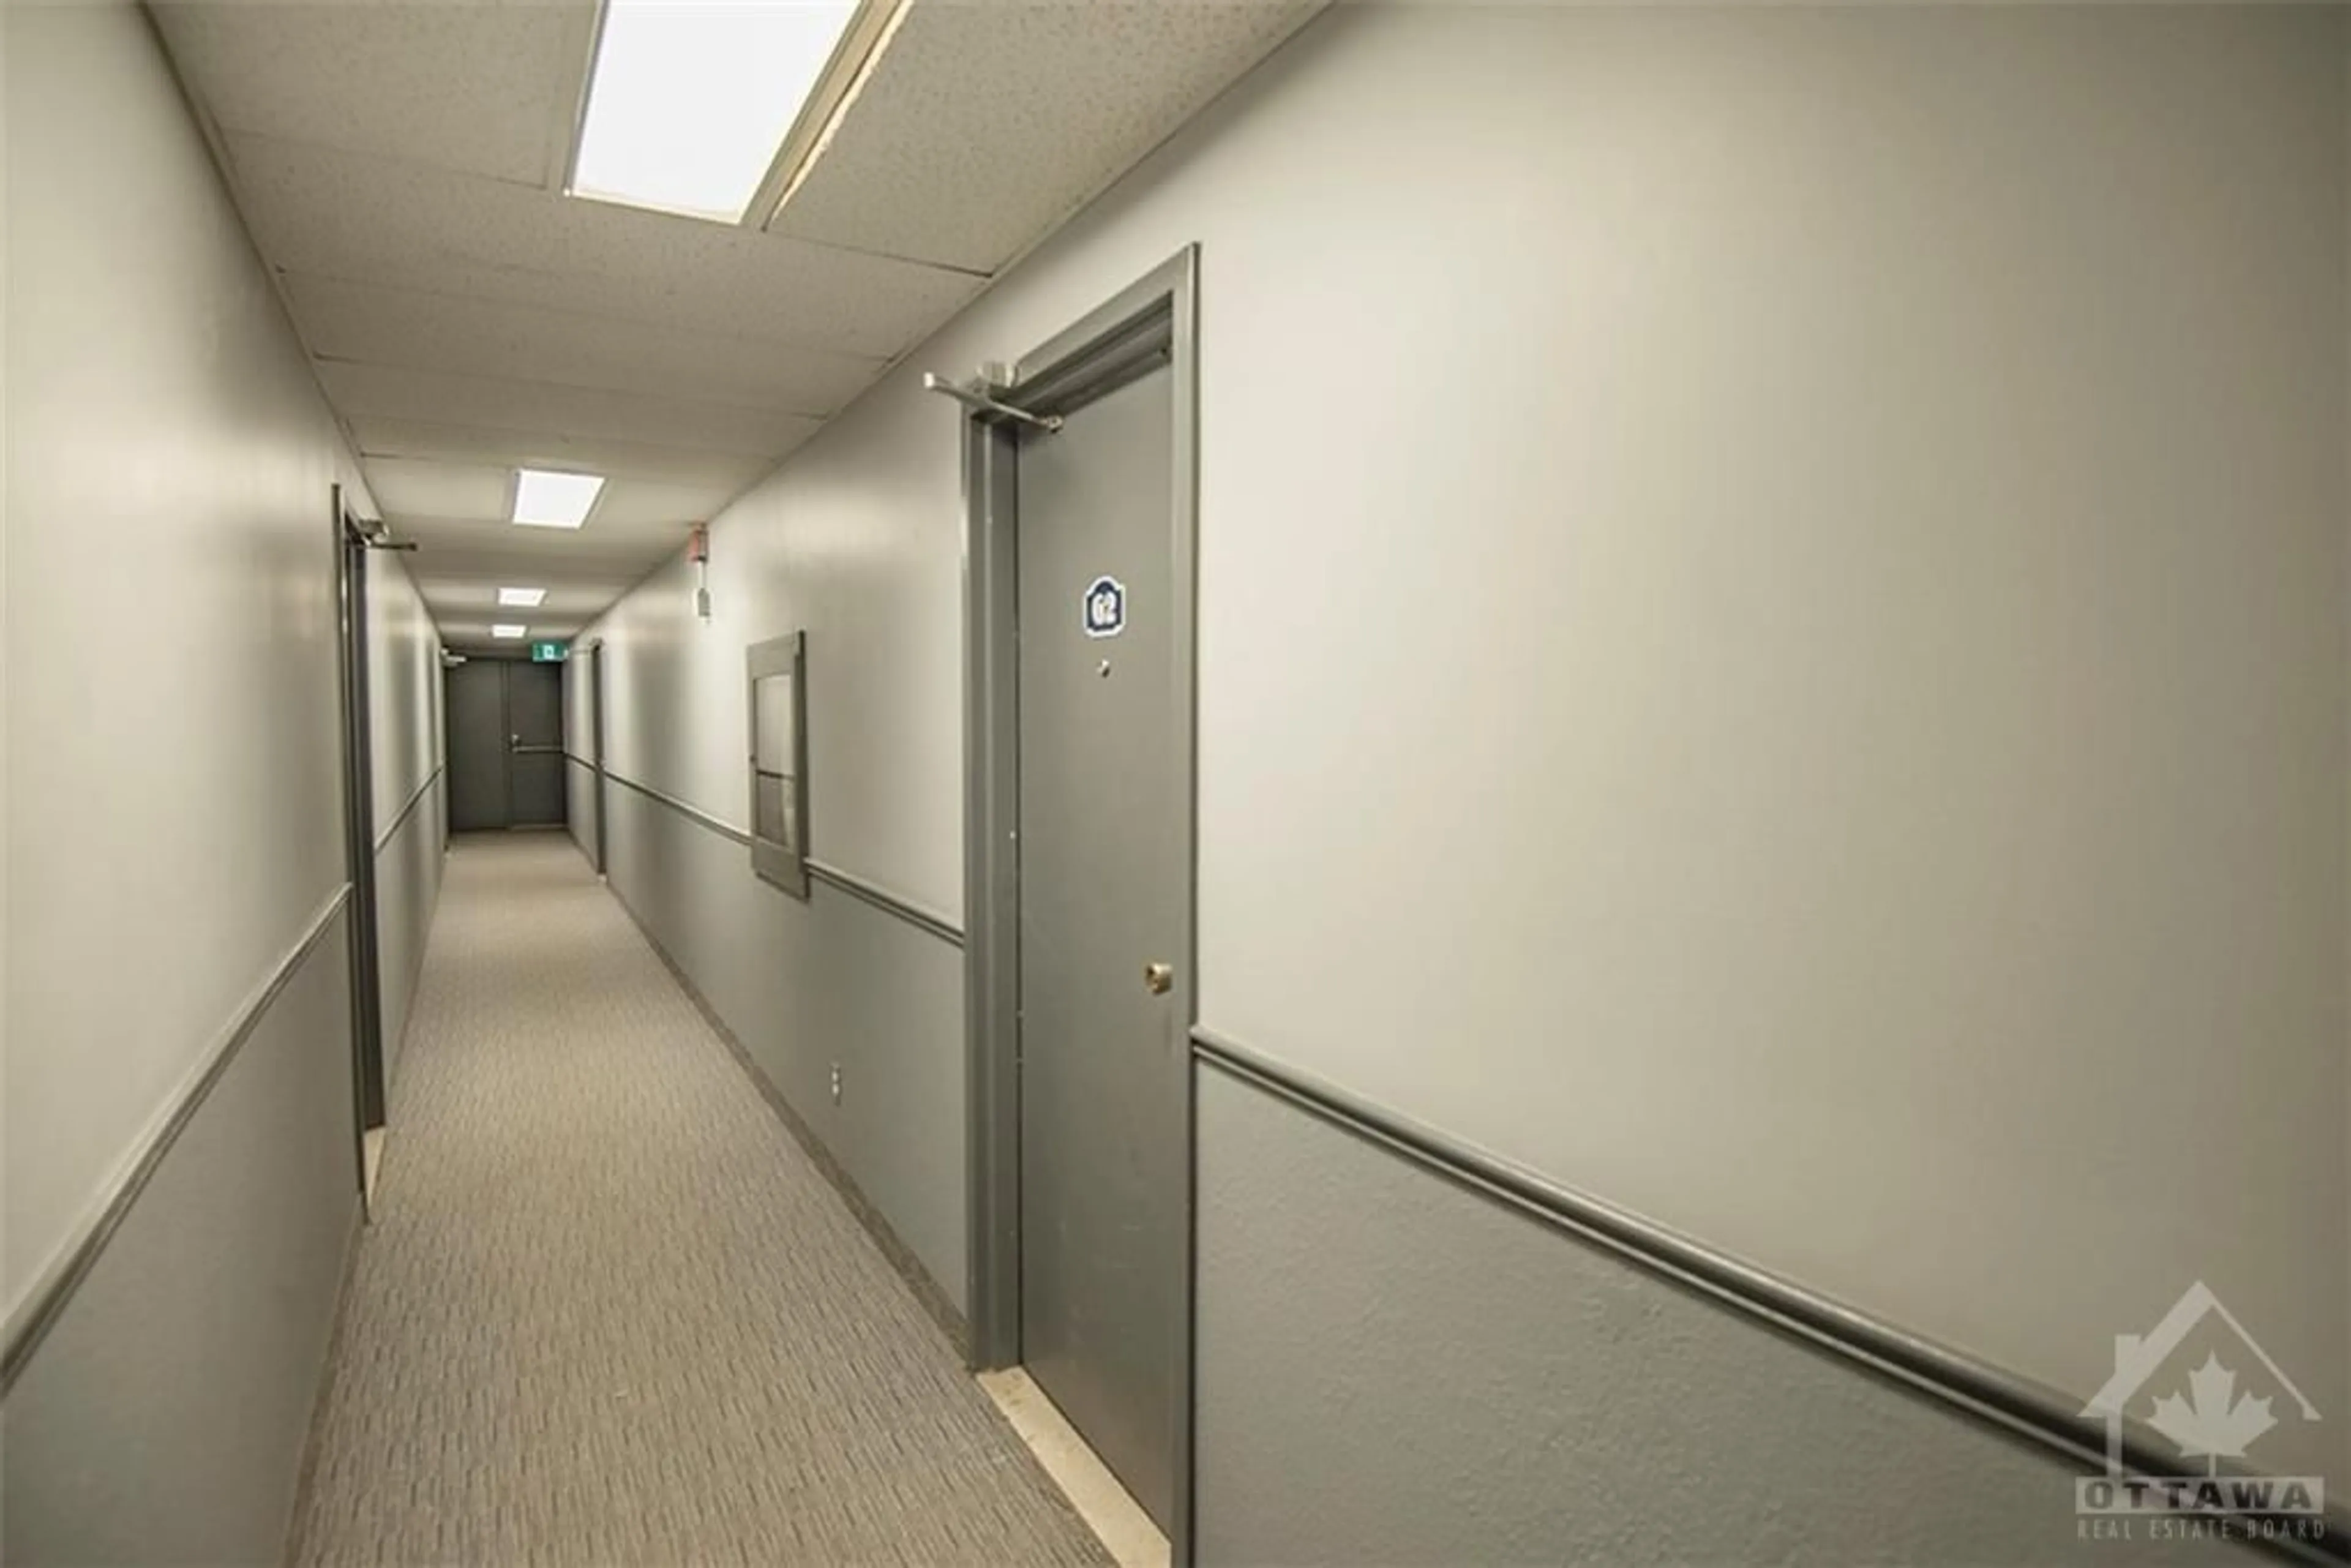 Other indoor space for 815 KYLE Crt #G8, Brockville Ontario K6V 6J7